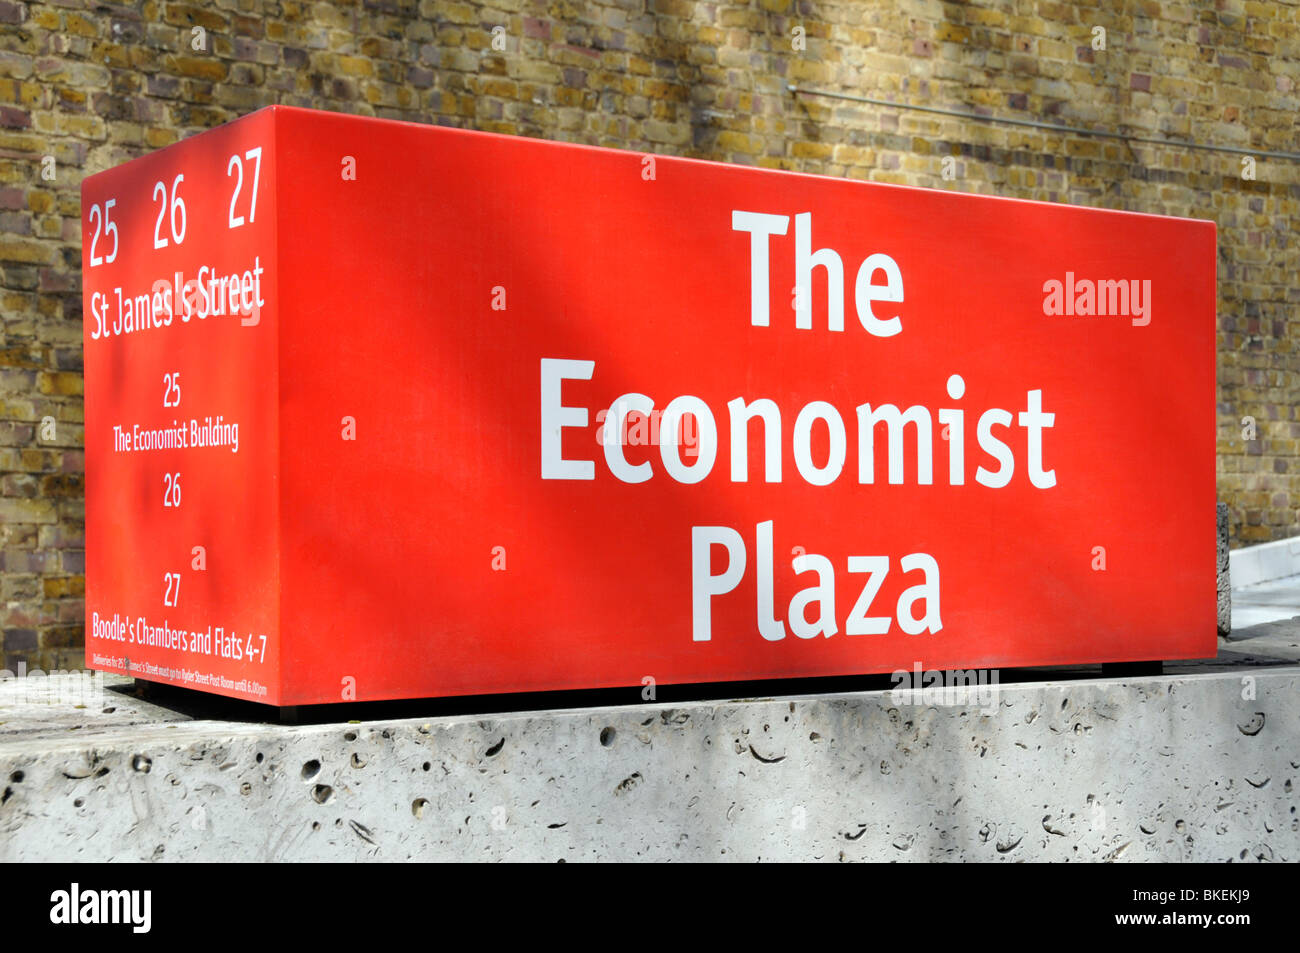 Inscrivez-vous pour l'Economist Plaza accueil des bureaux du journal The Economist hebdomadaire Banque D'Images